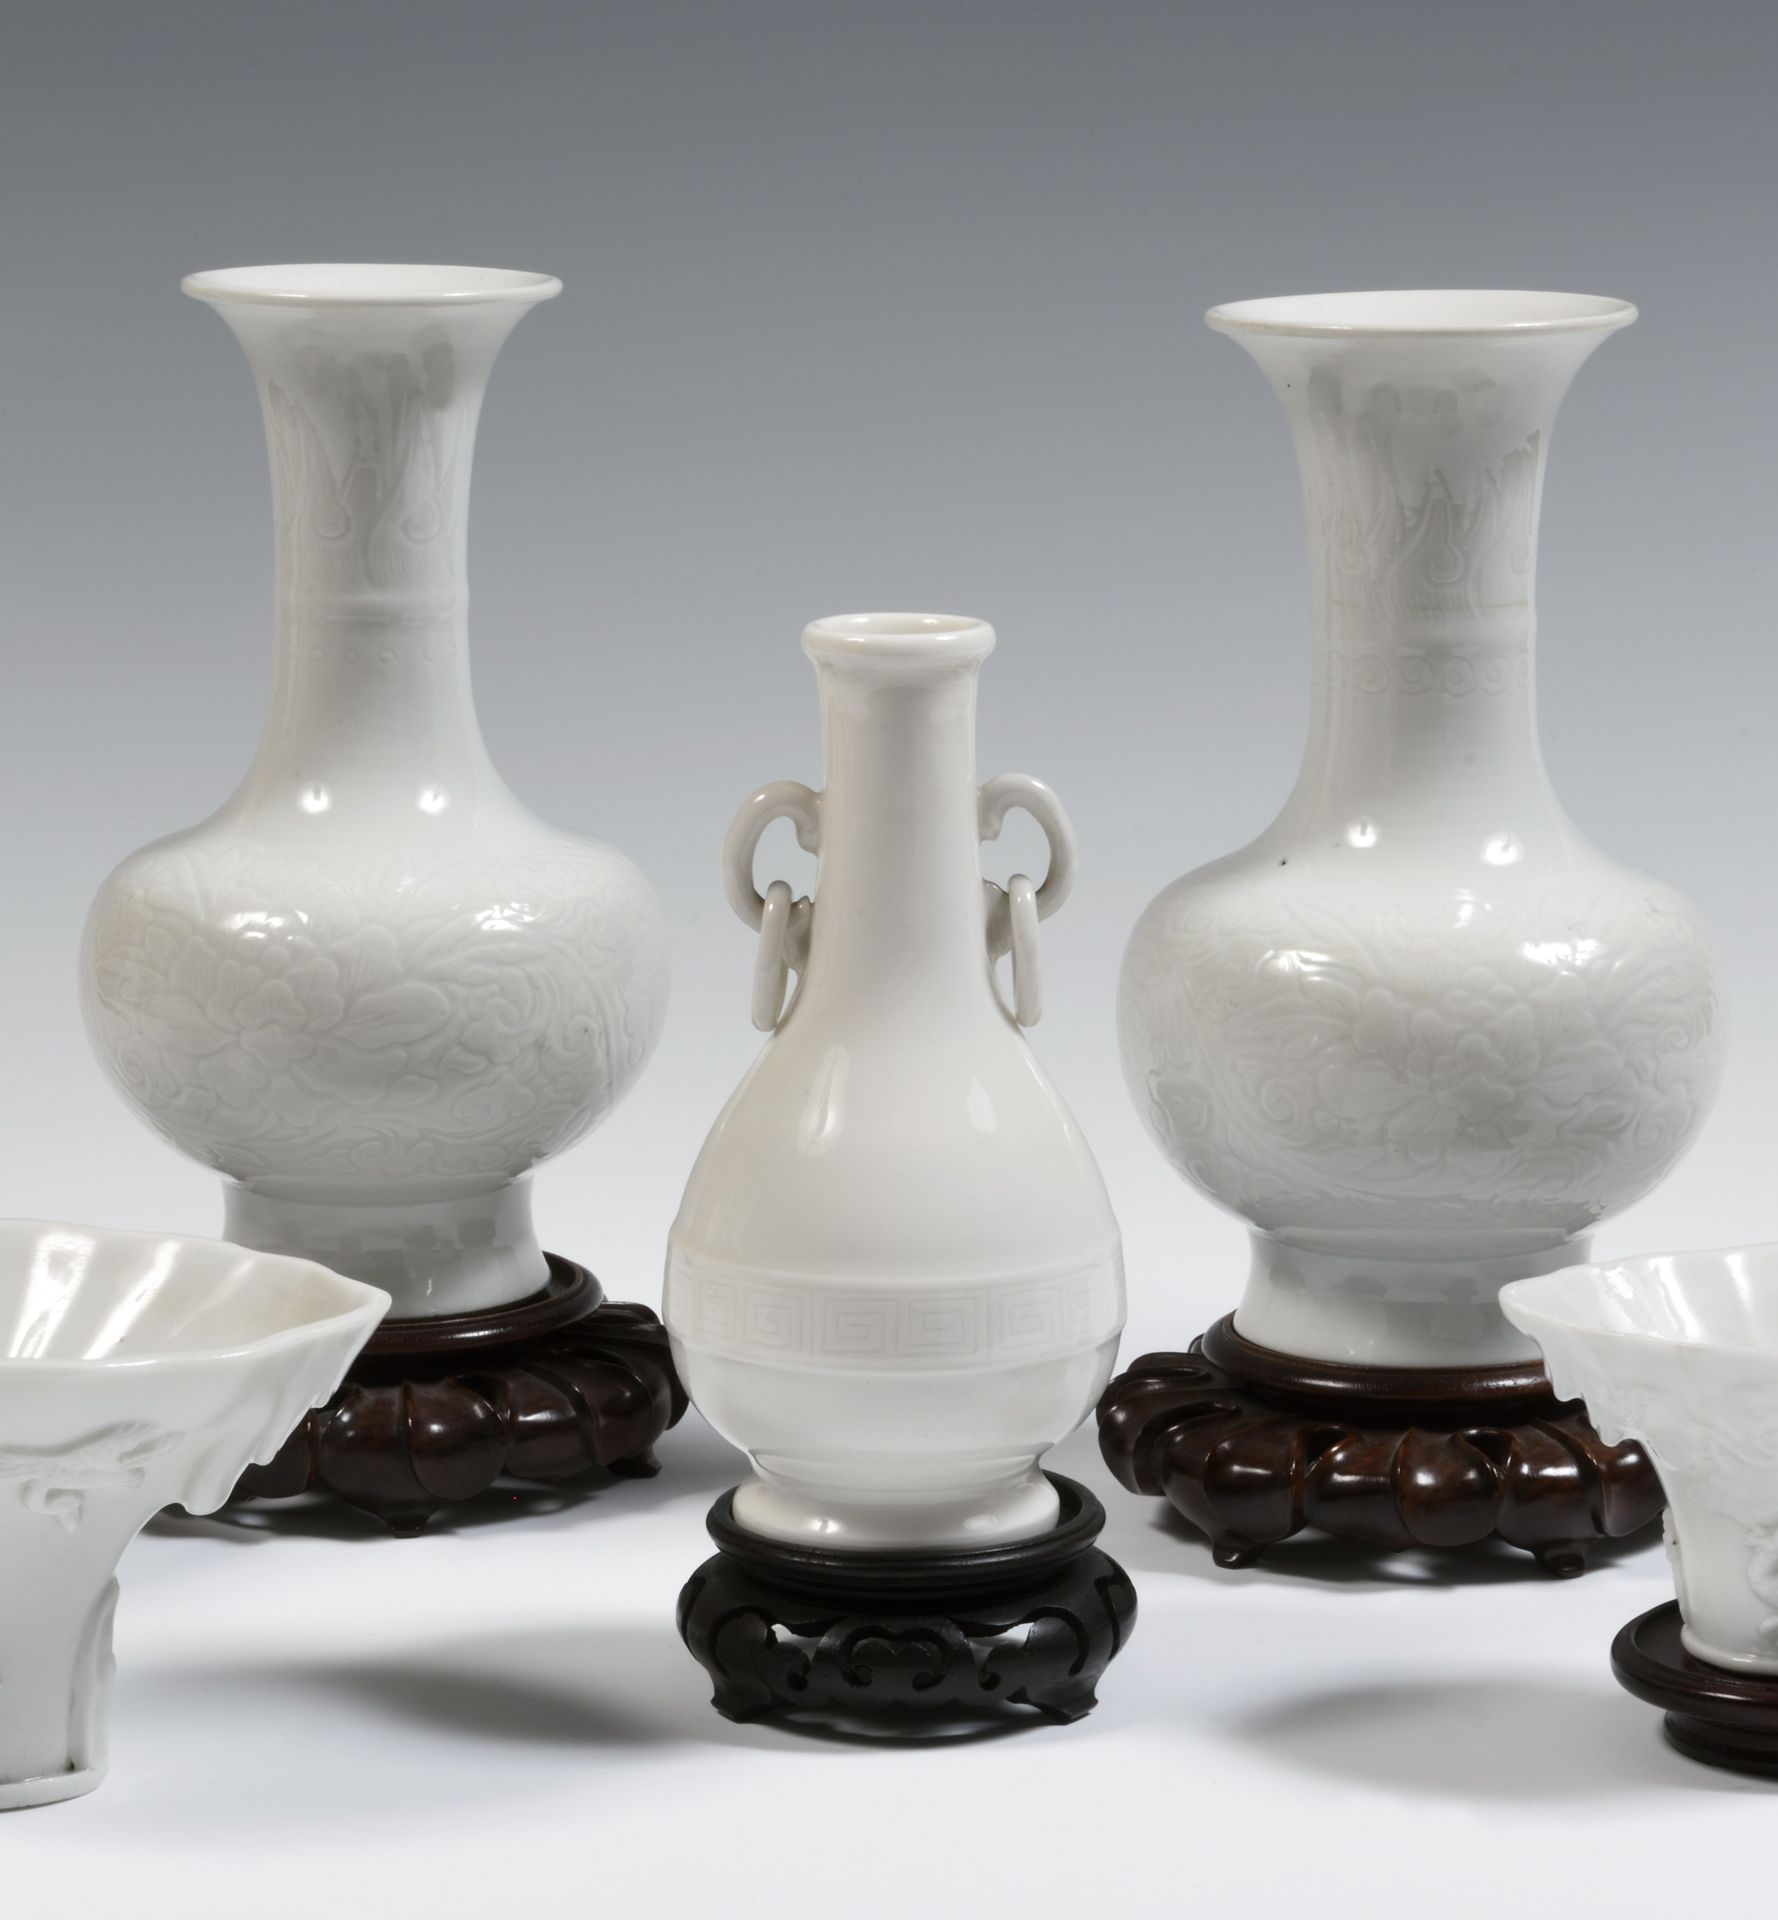 Null 
China

Piratenförmige Vase aus weißem chinesischem Porzellan, mit zwei rin&hellip;